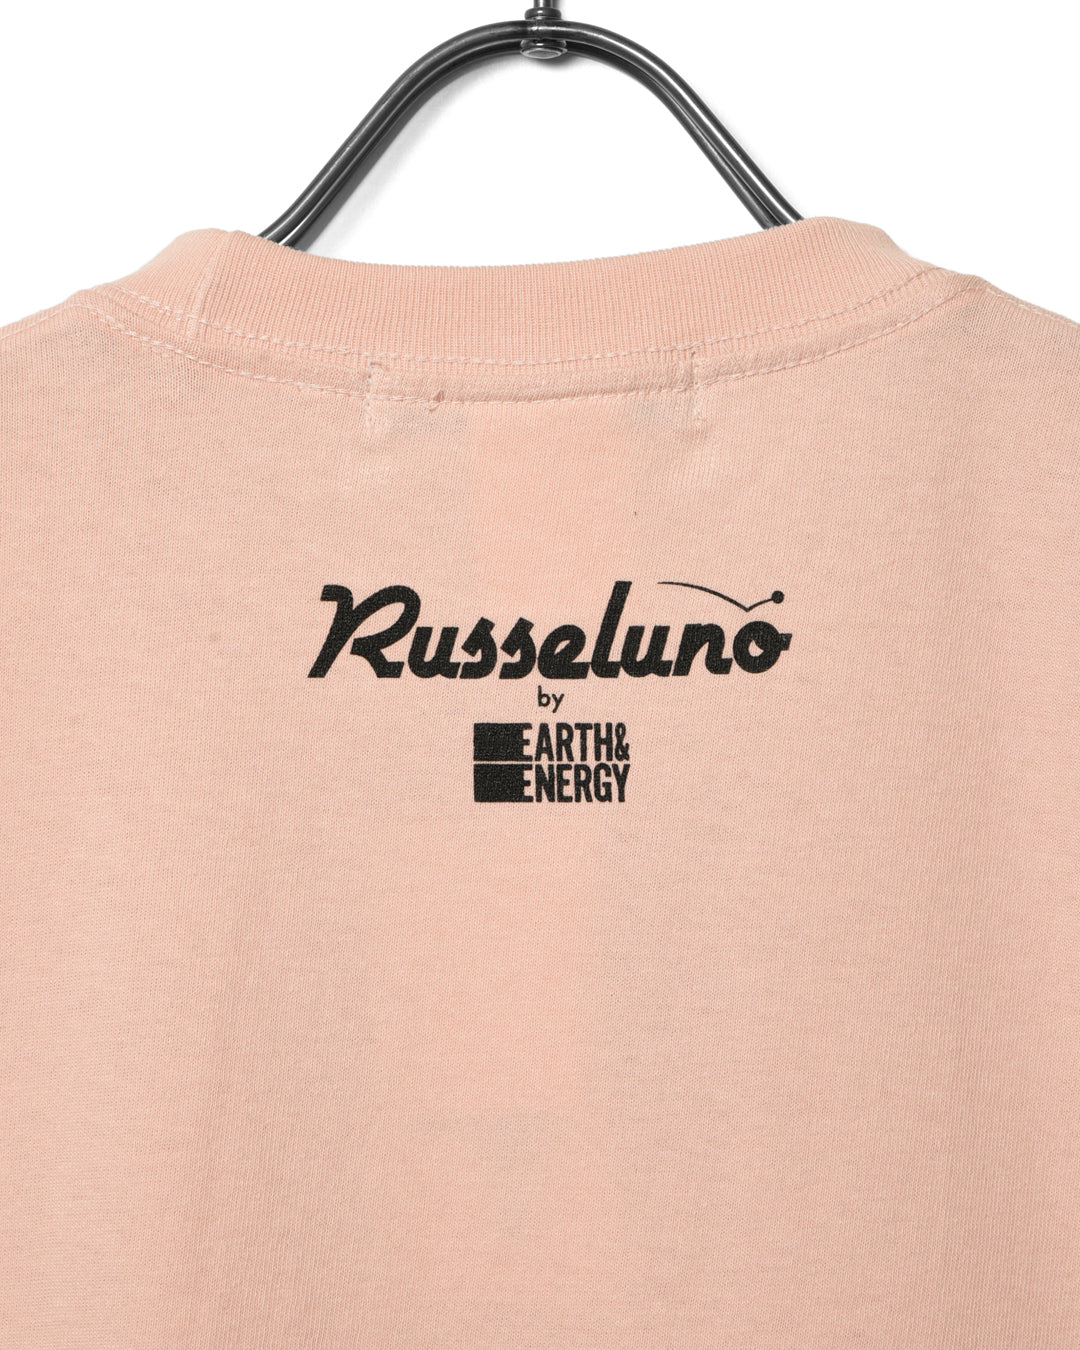 Camiseta Russeluno por E & E & E-Ki Nishimoto